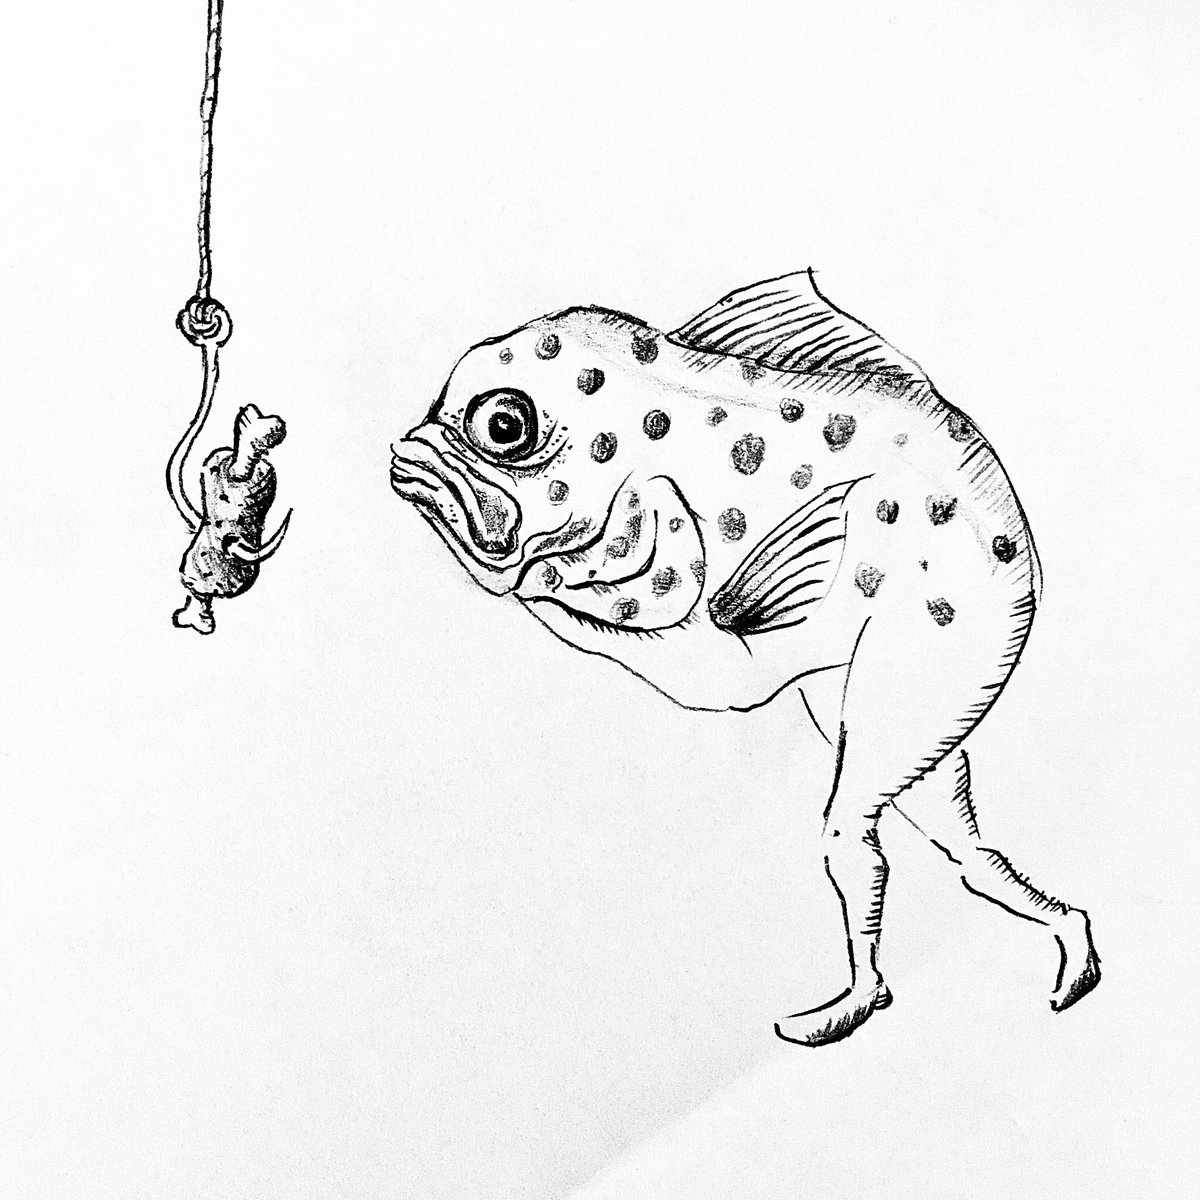 魚 イラスト フリー 白黒 魚 イラスト フリー 白黒 ~ イラスト画像集